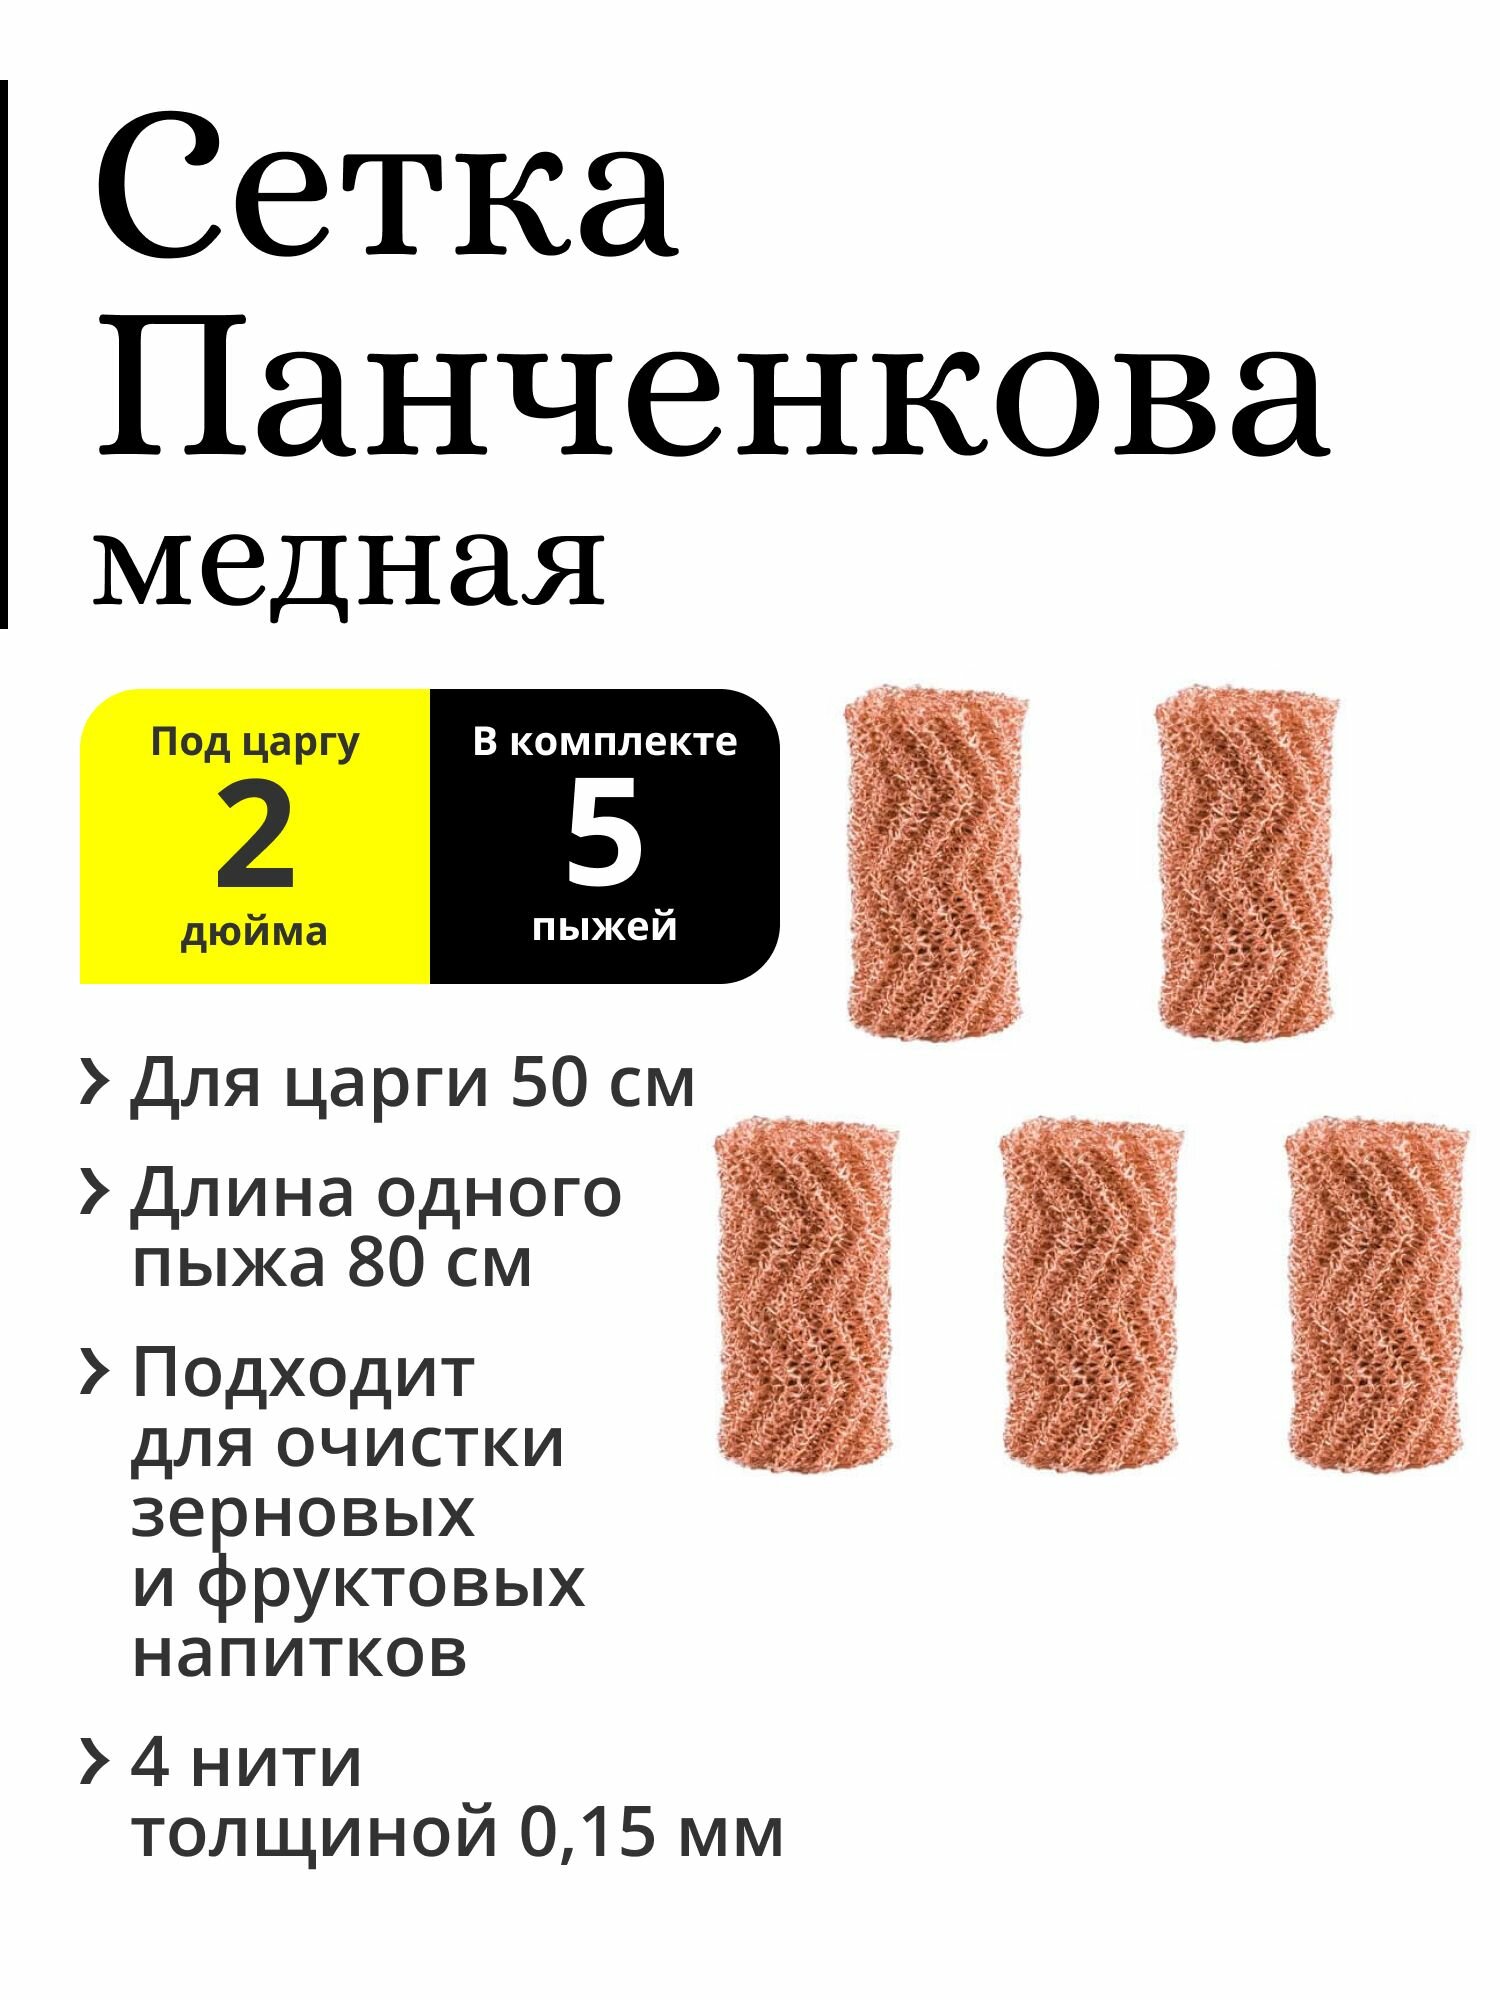 Комплект пыжей РПН (сетка Панченкова) 5 штук по 80 см (400 см), медная, 4 нити, для царги 2 дюйма 50 см